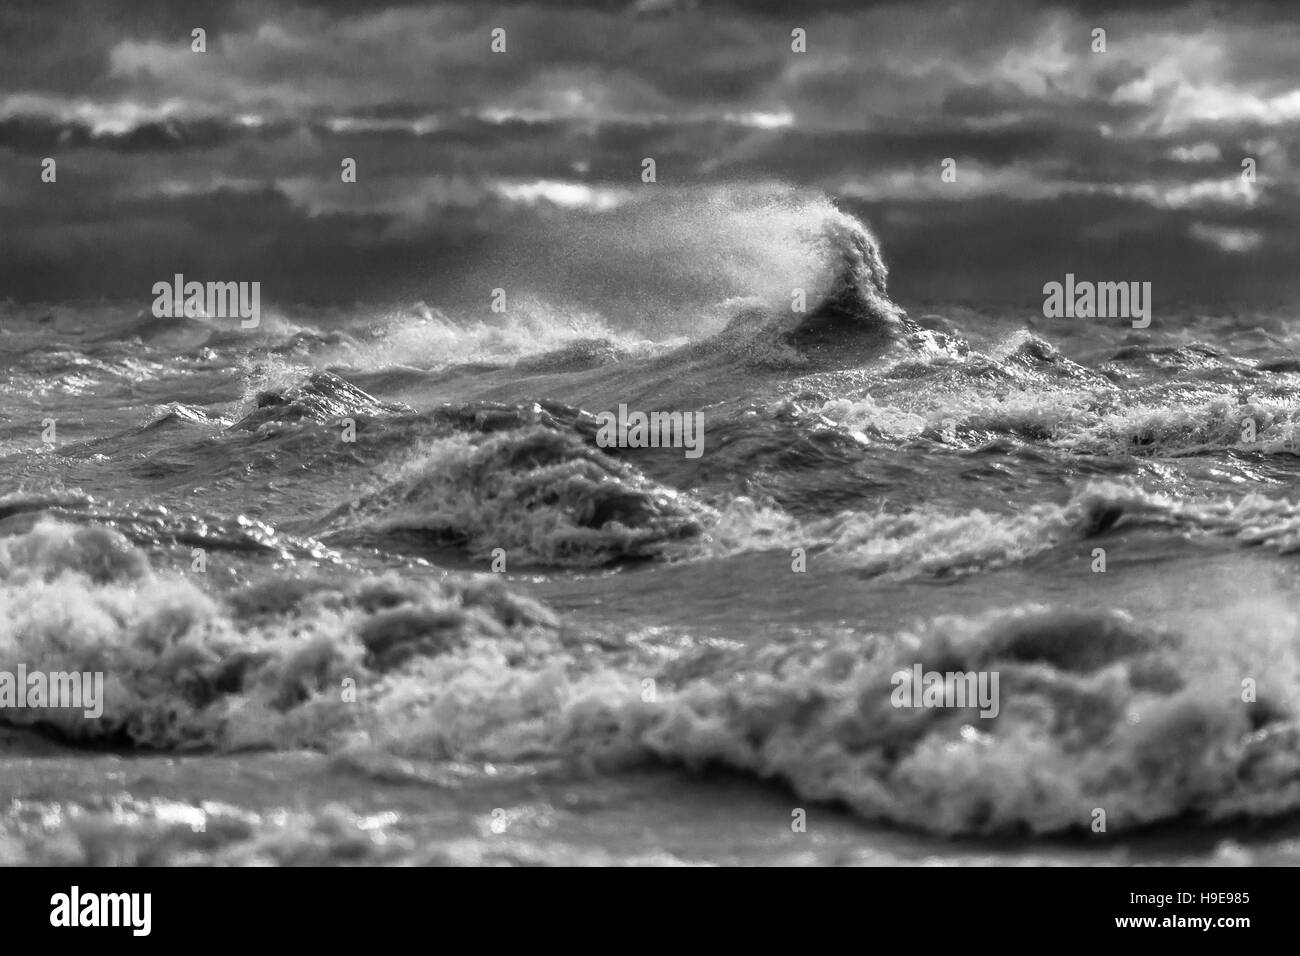 Il Gales di Novembre è il nome dato al vento che frusta i Grandi Laghi al punto appare come un oceano o mare. Foto Stock